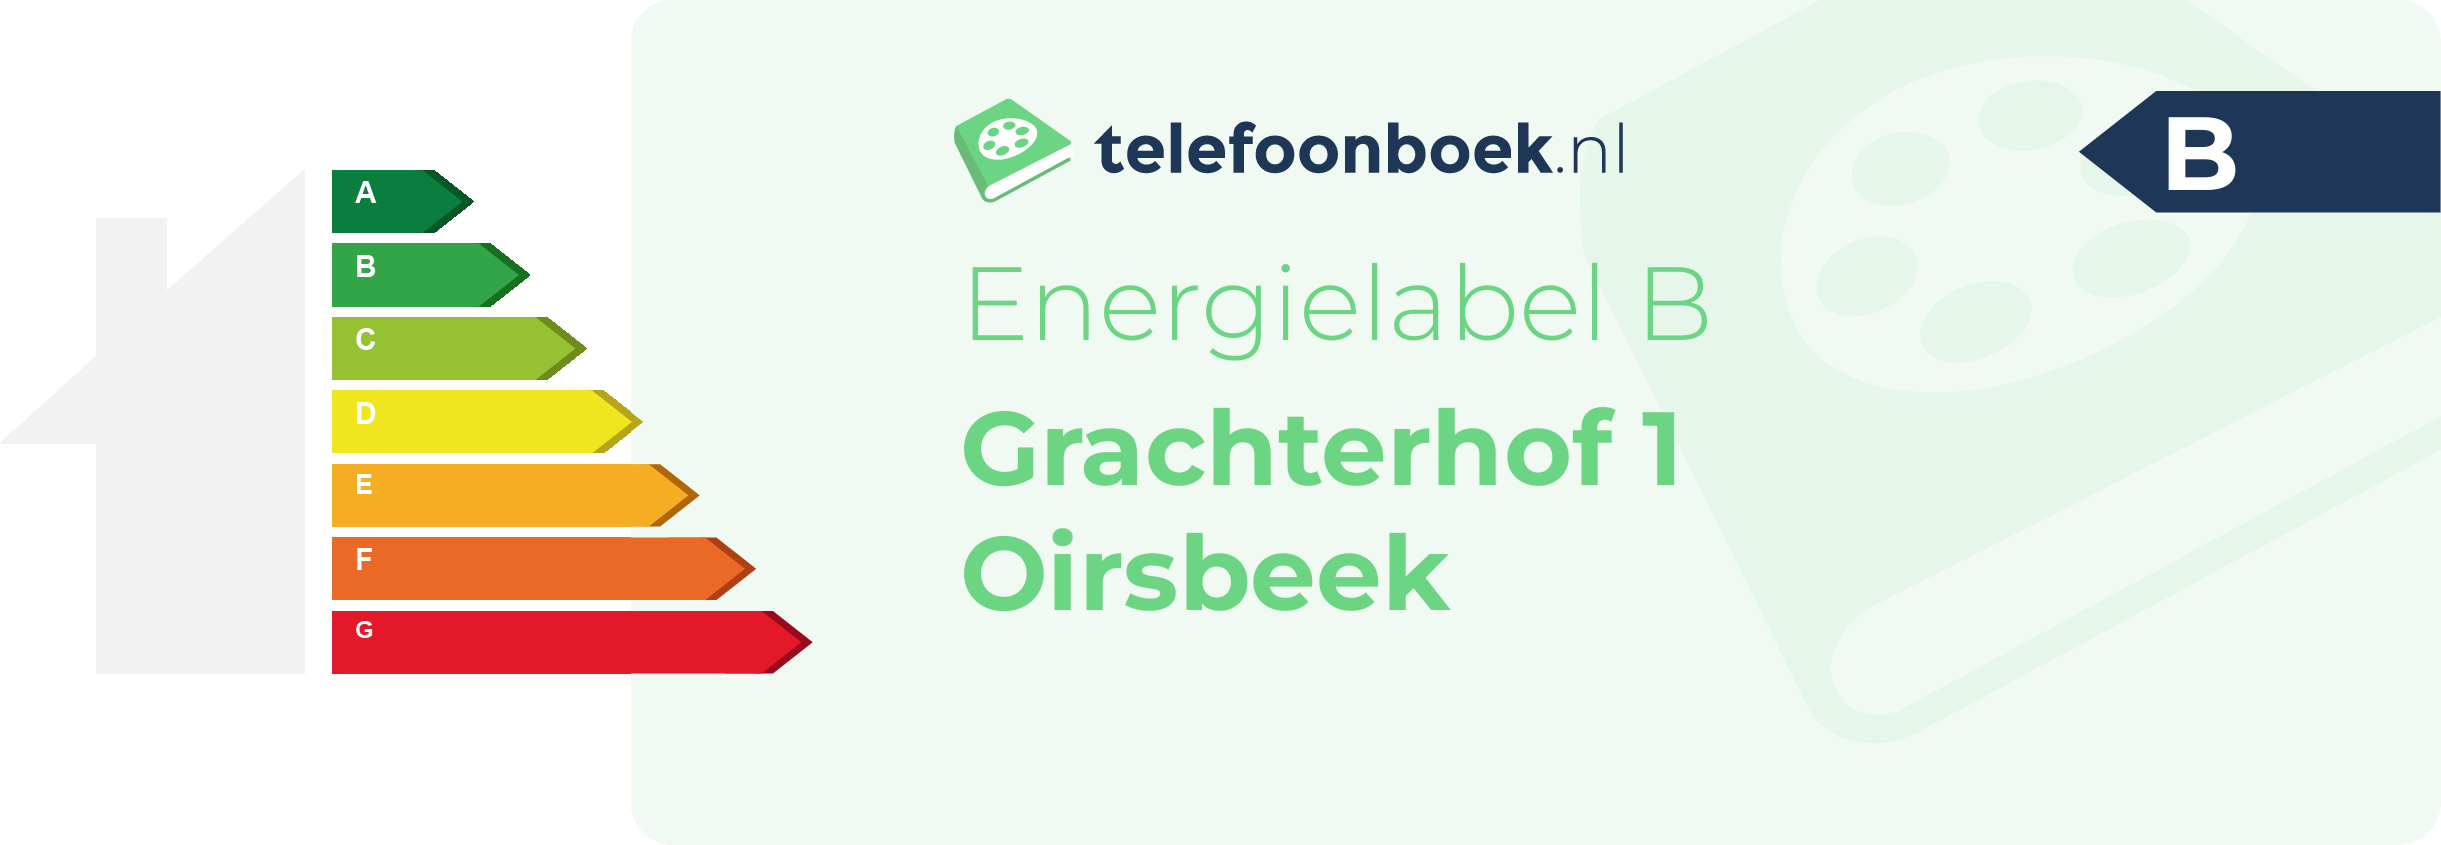 Energielabel Grachterhof 1 Oirsbeek